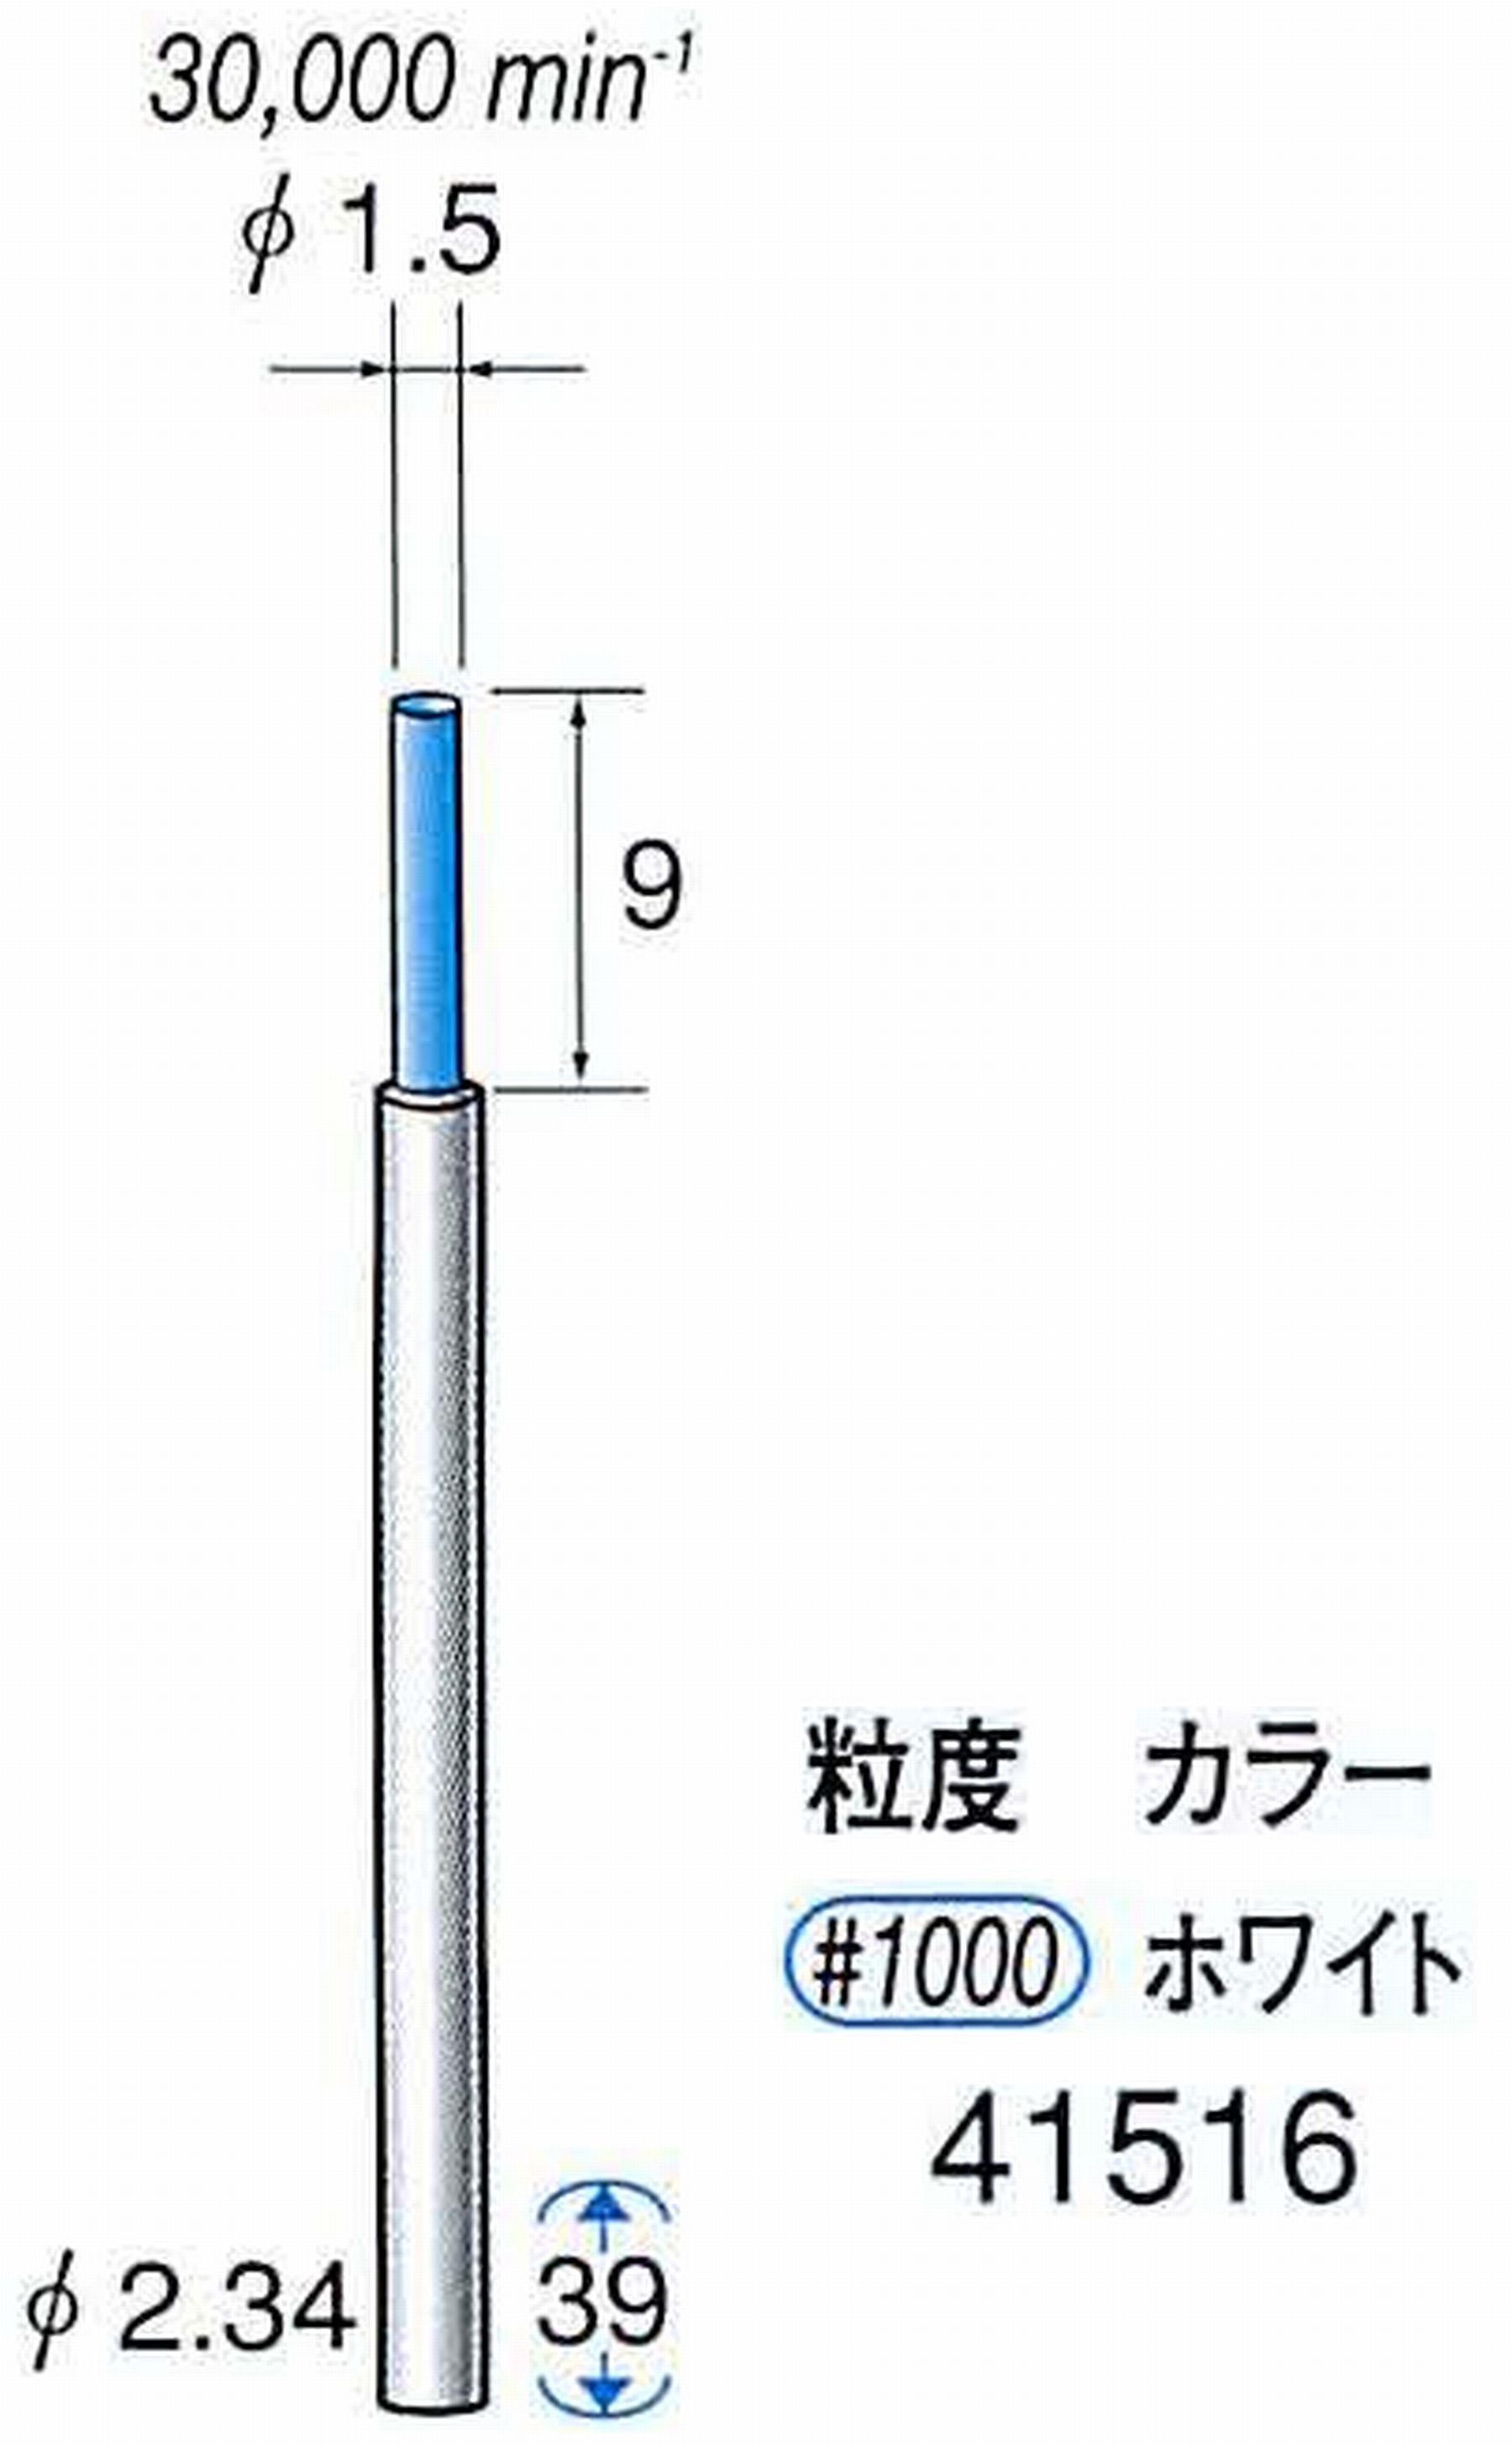 ナカニシ/NAKANISHI セラファイバー精密軸付砥石(カラー ホワイト) 軸径(シャンク) φ2.34mm 41516